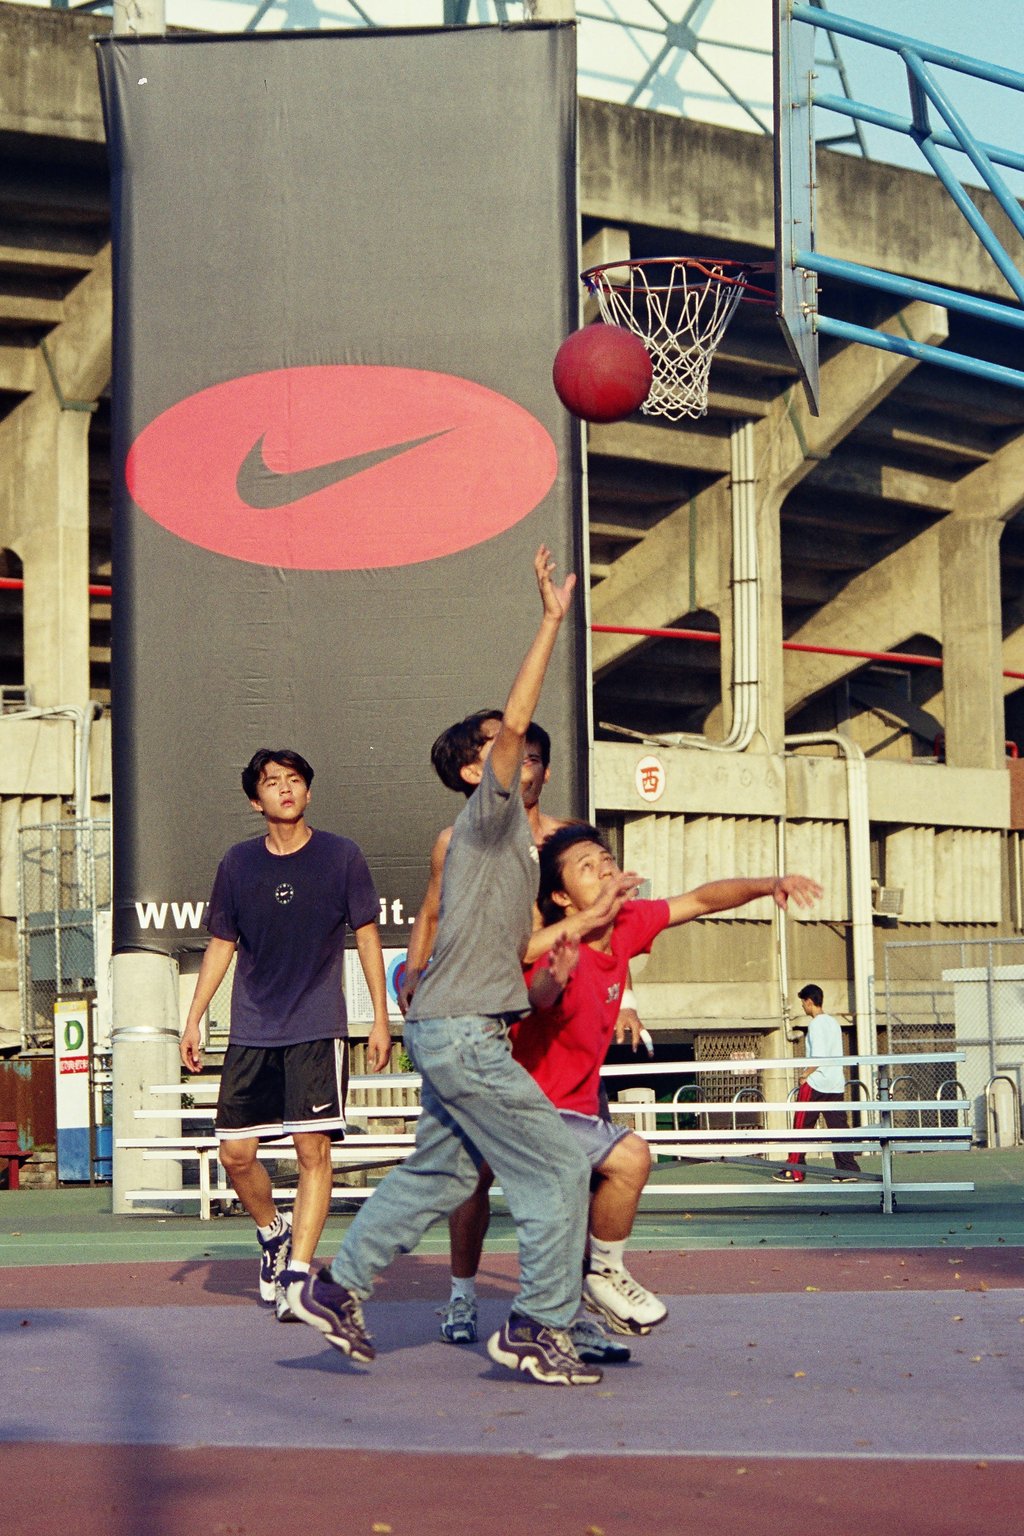 底片影像台中田徑場戶外夏日籃球系列攝影照片64